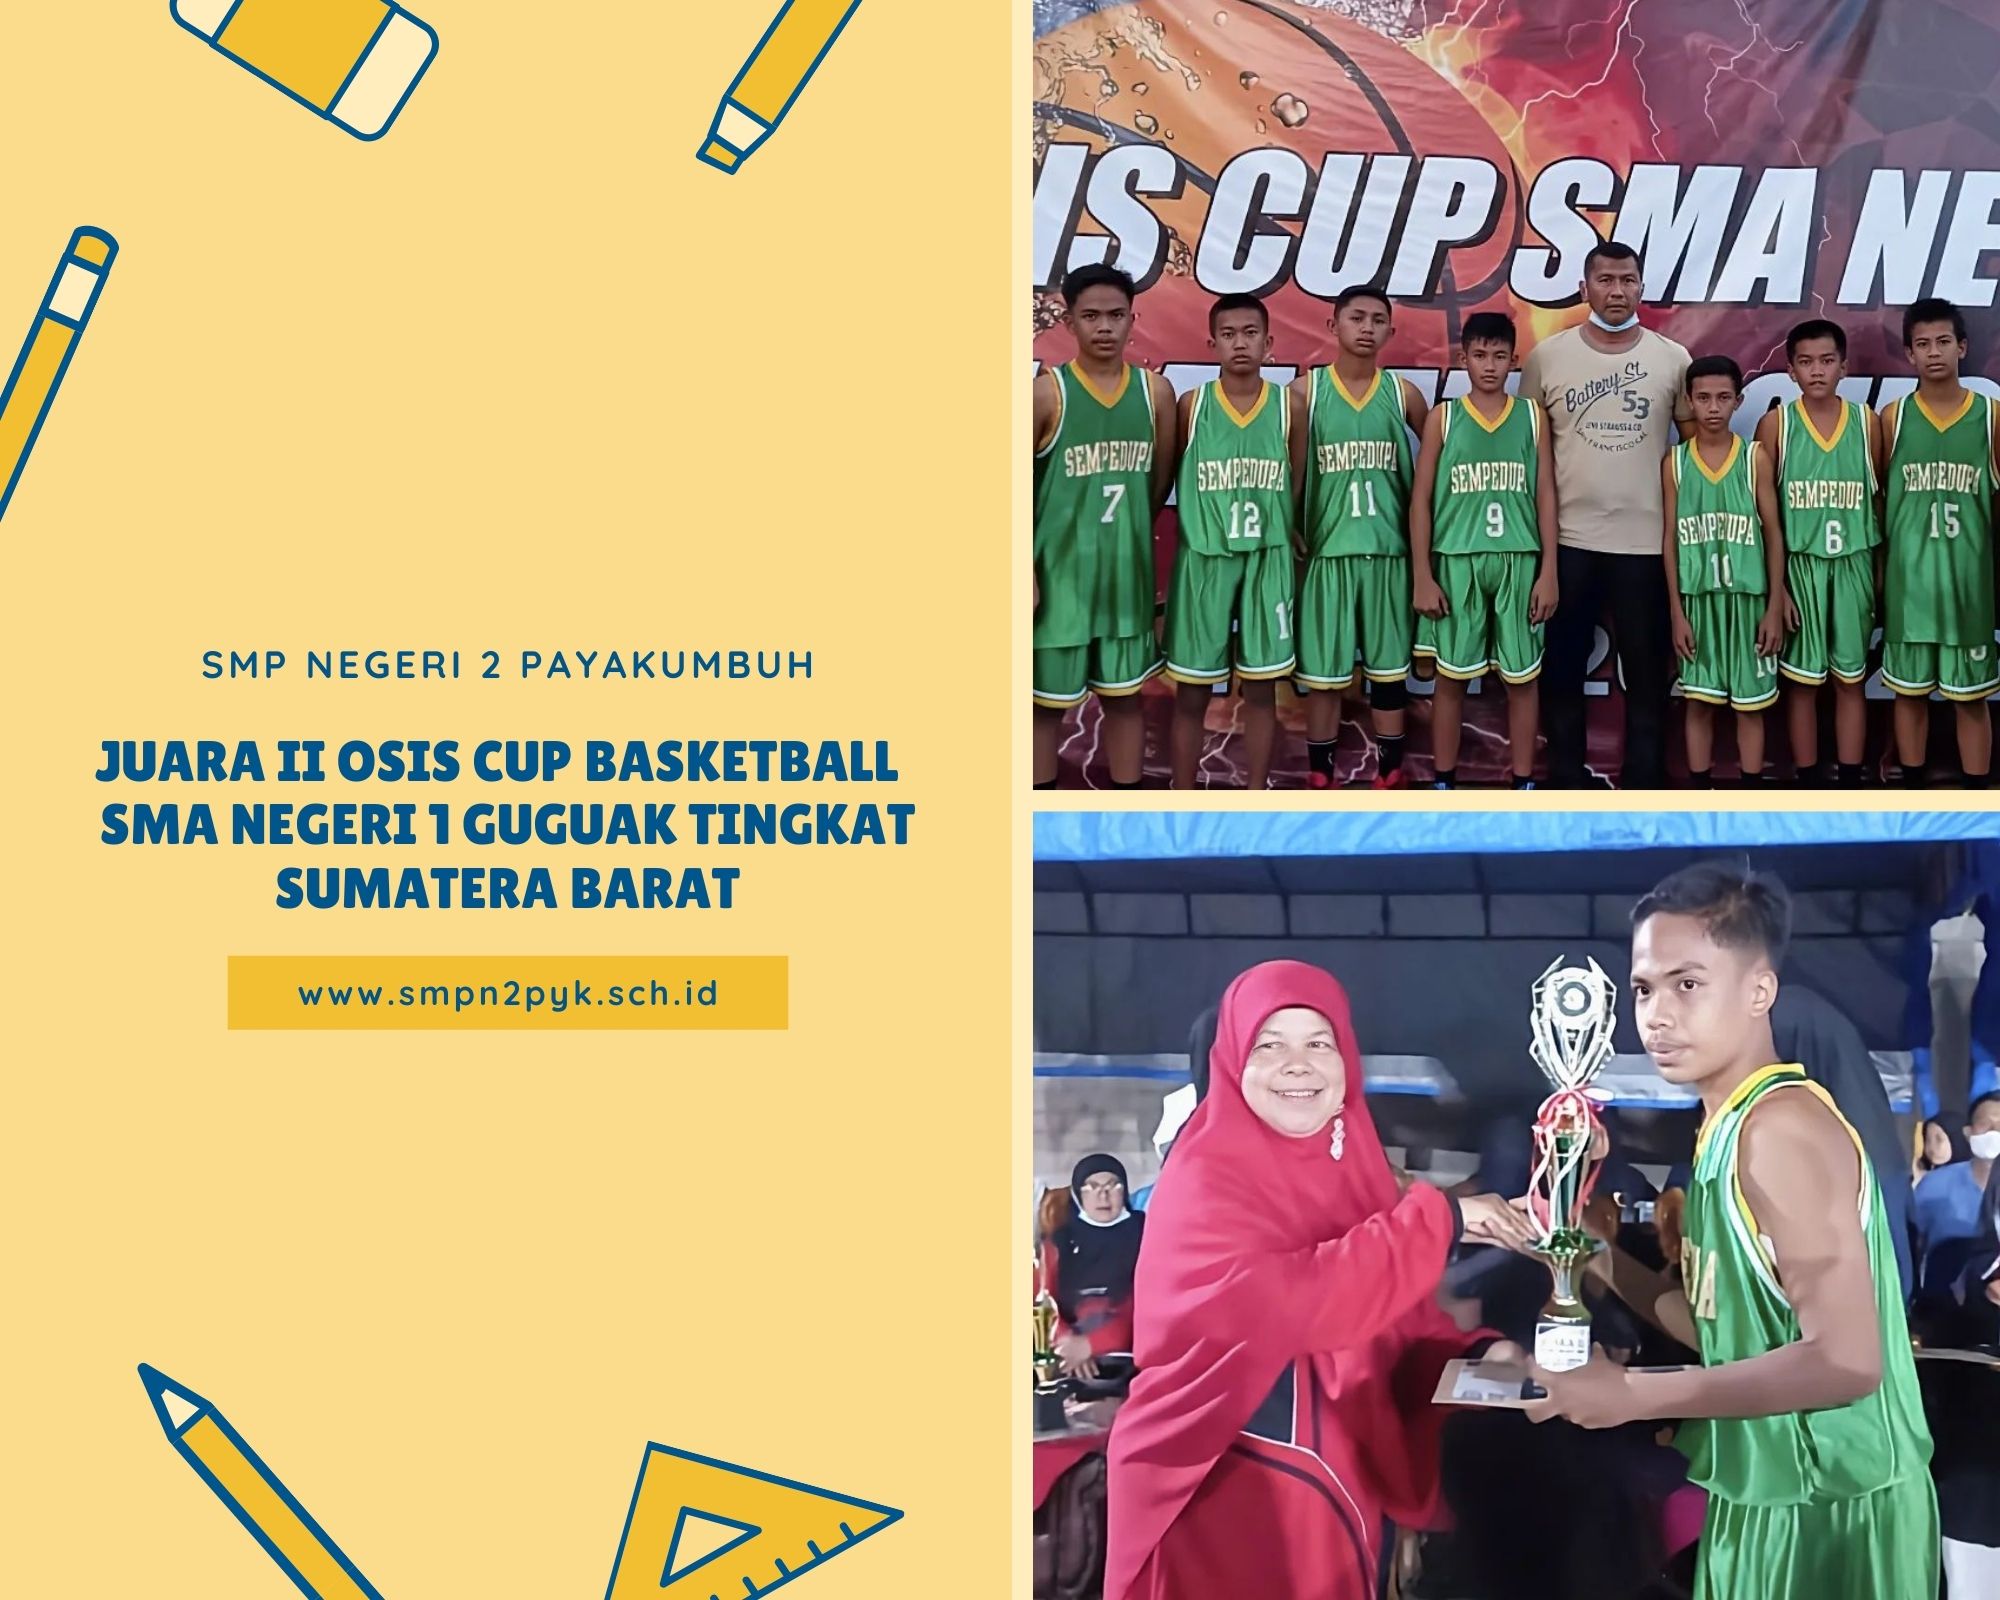 Juara II OSIS Cup Basketball SMA Negeri 1 Guguak Tingkat Sumatera Barat